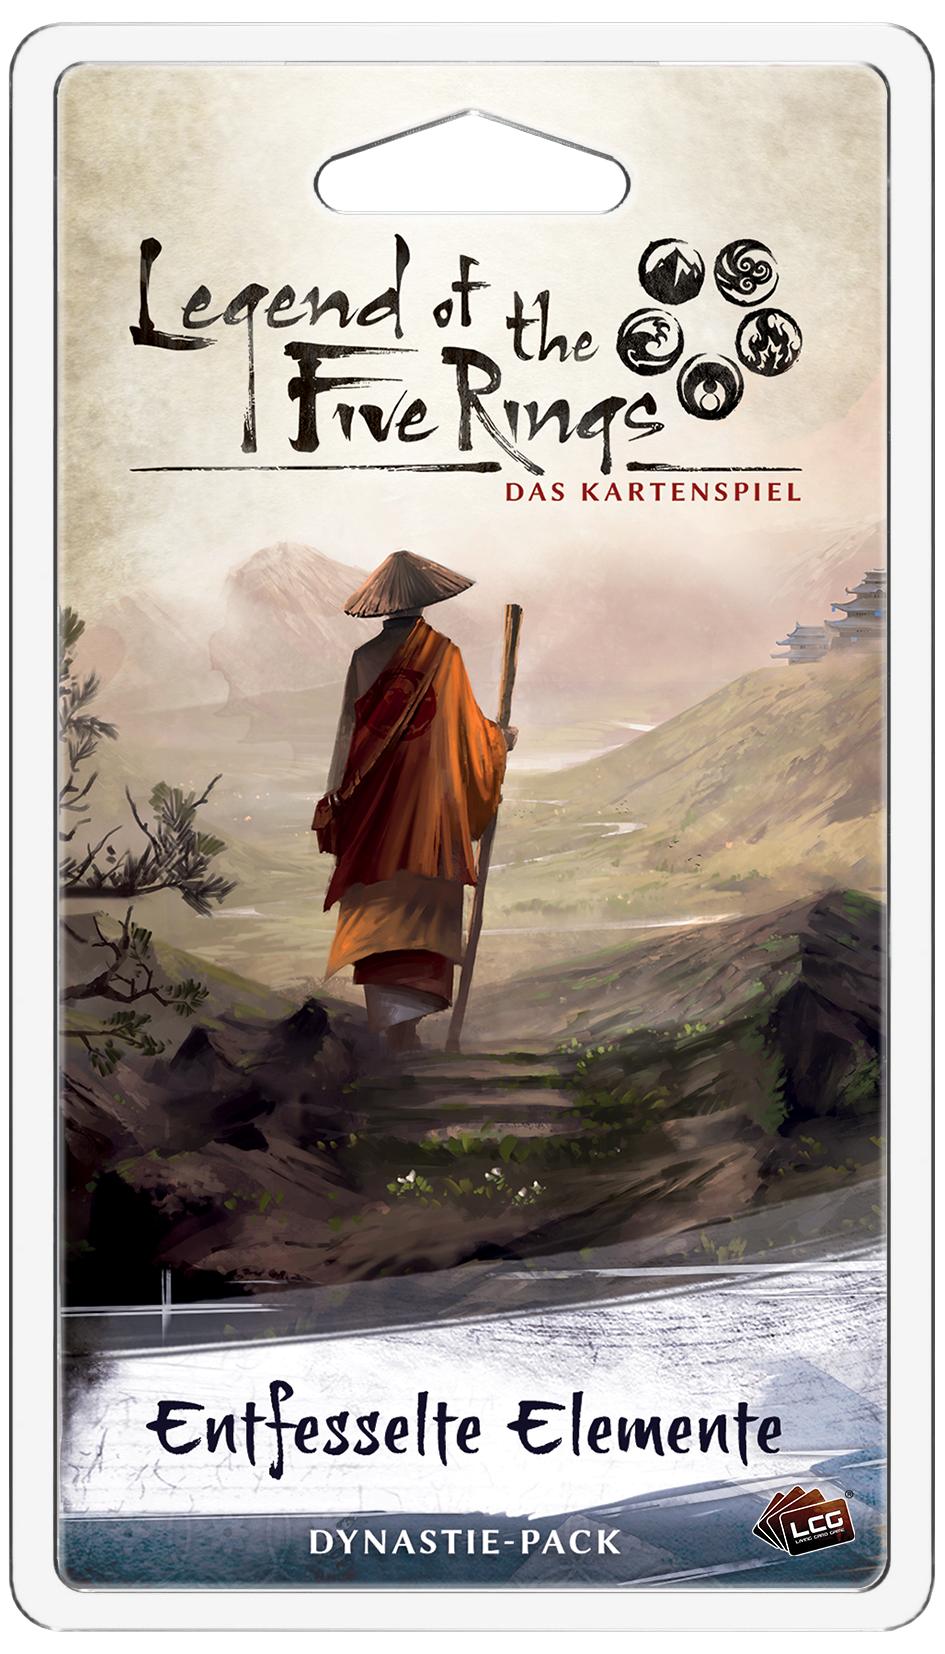 Legend of the Five Rings: Das Kartenspiel - Elementar 6: Entfesselte Elemente Dynastie-Pack